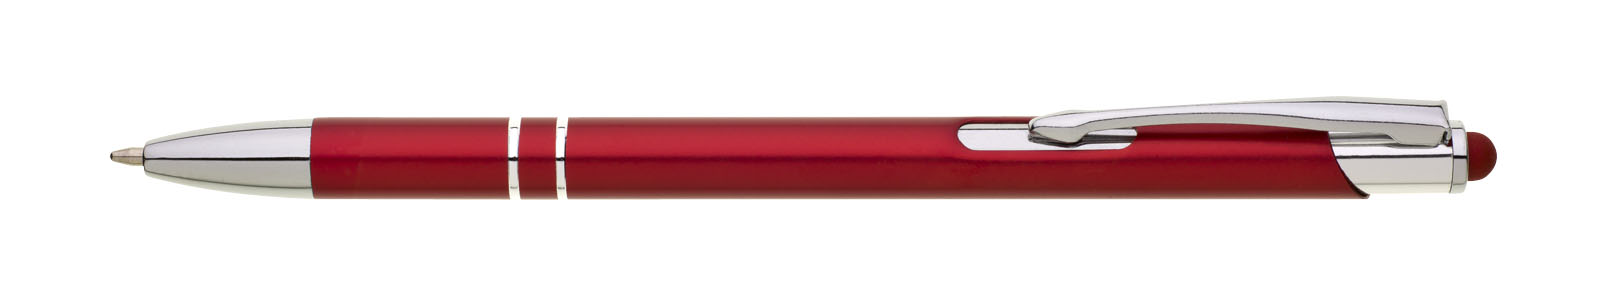 Metal ballpoint pen NALBE with stylus